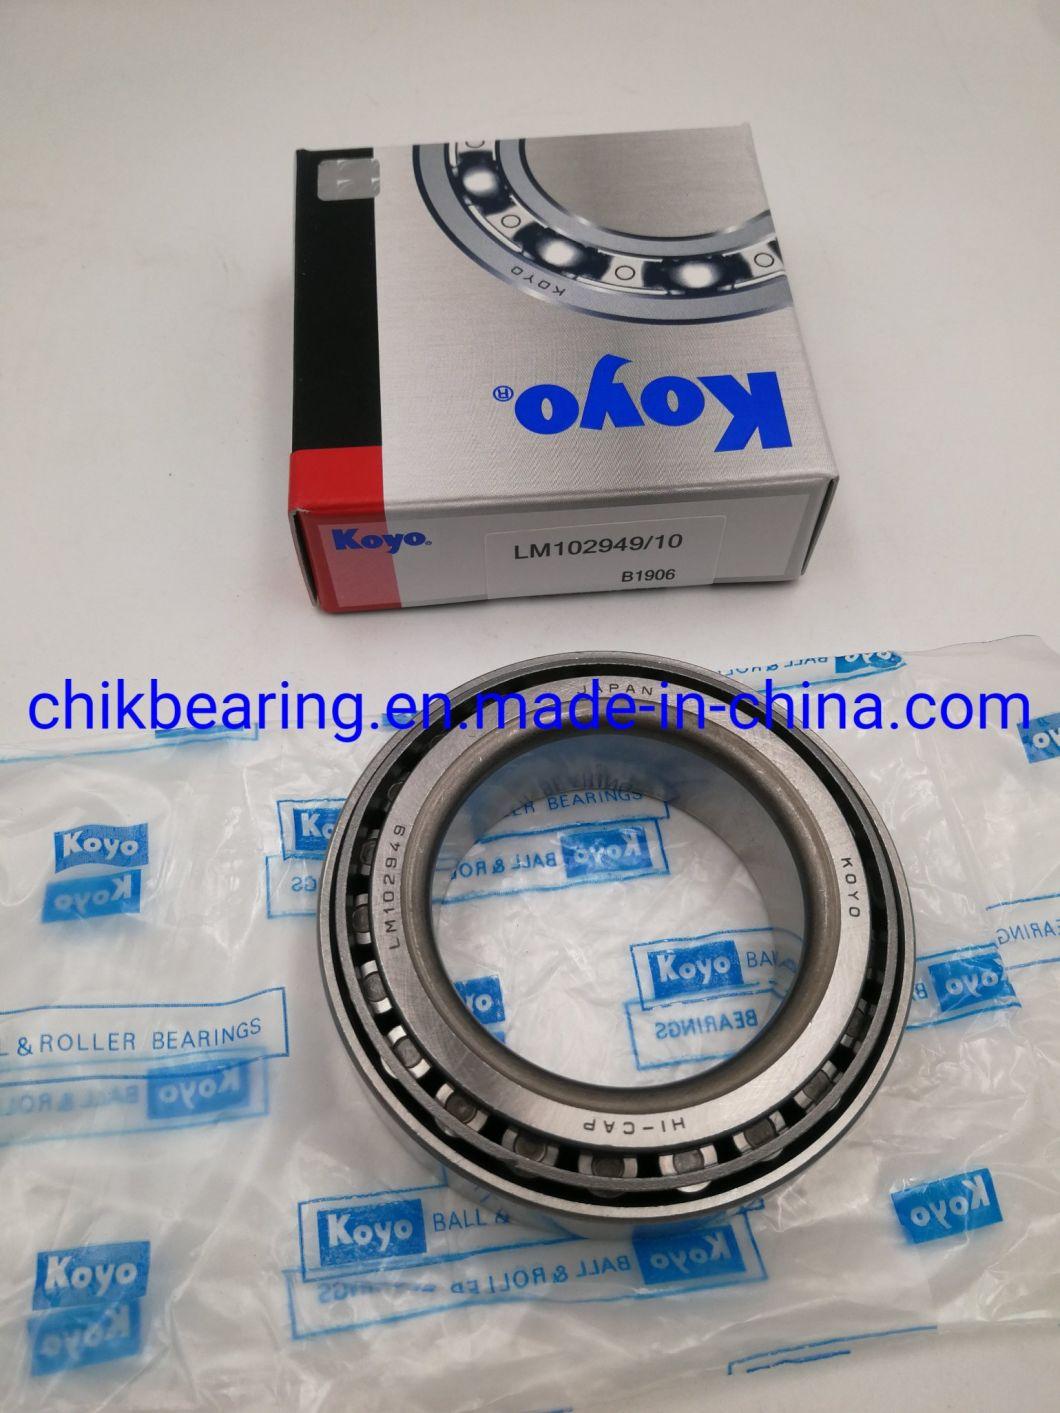 Timken SKF Koyo Wheel Bearing Transmission Bearing Gearbox Bearing Lm603049/Lm603011 Lm603049/11 Lm545849/Lm545810 Lm545849/10 Lm522546/Lm522510 Lm522546/10